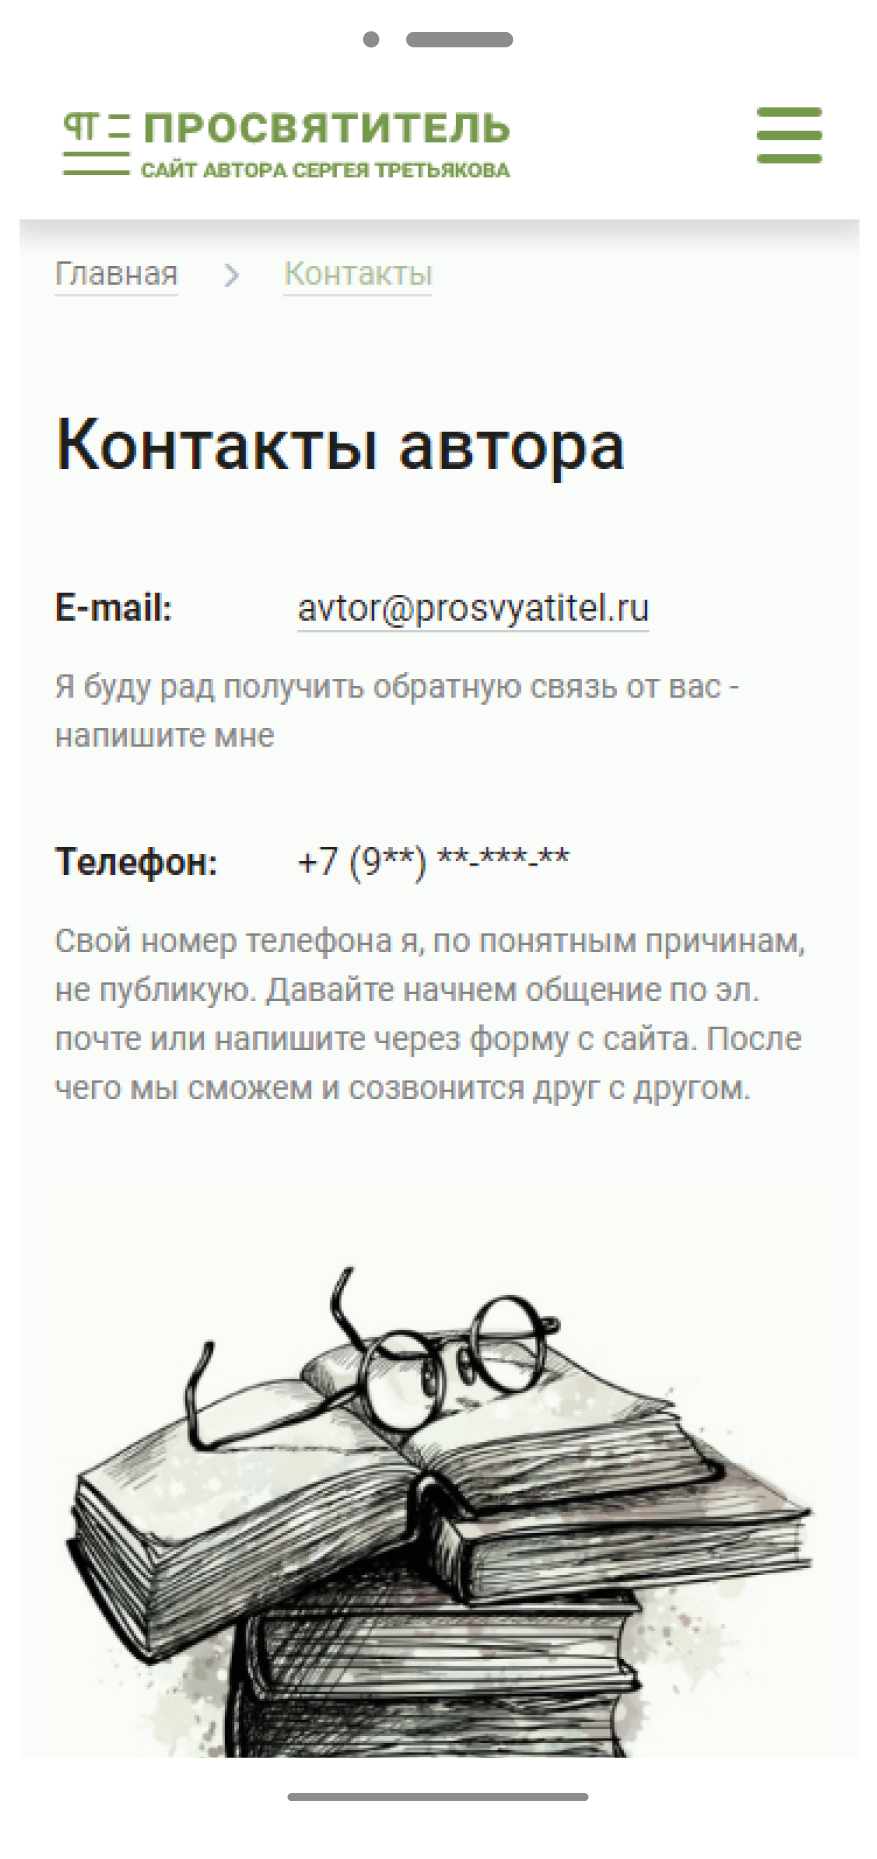 Сайт автора Сергея Третьякова